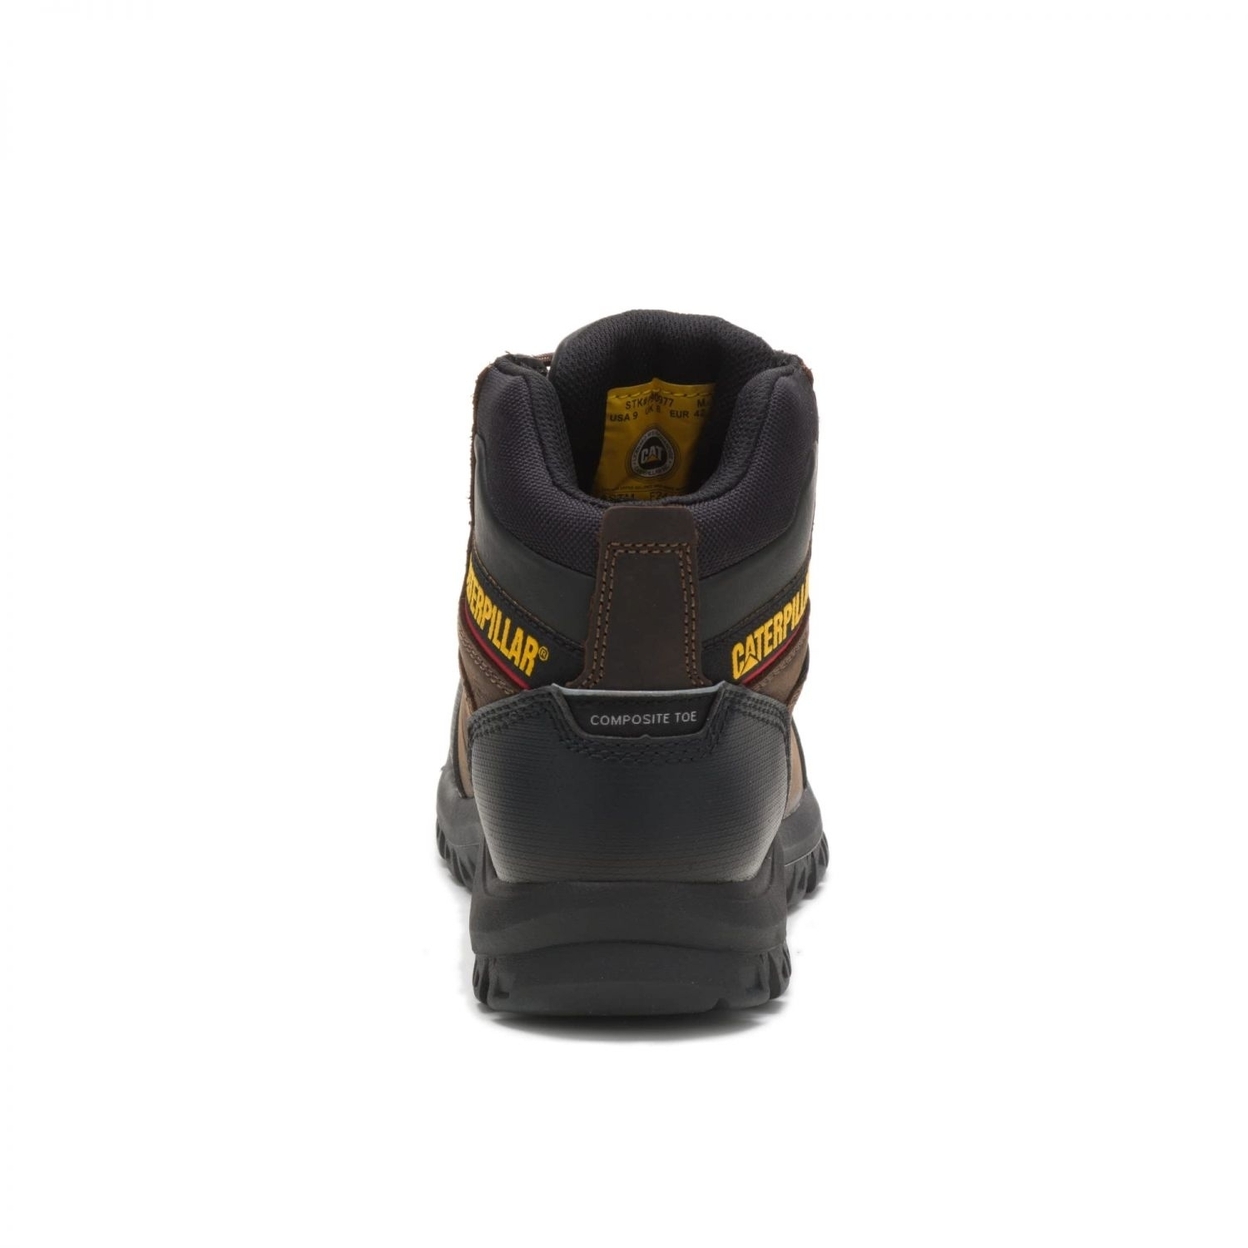 Cat Footwear Men's Resorption Composite Toe Waterproof Industrial Boot BLACK - BLACK, 7-M